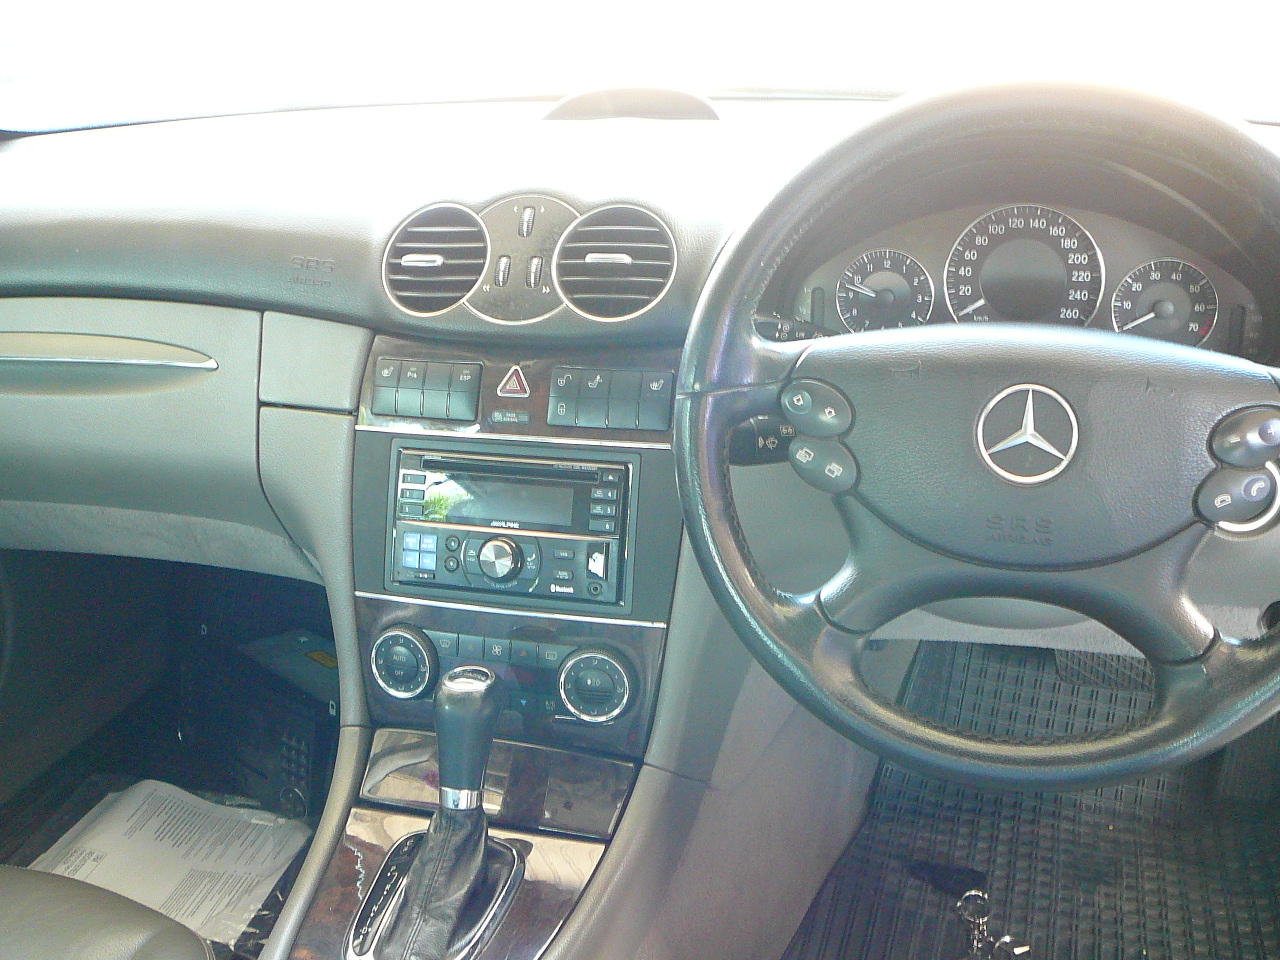 Mercedes Benz CLK280, Alpine CDE-W235EBT & Dash Fascia Installation